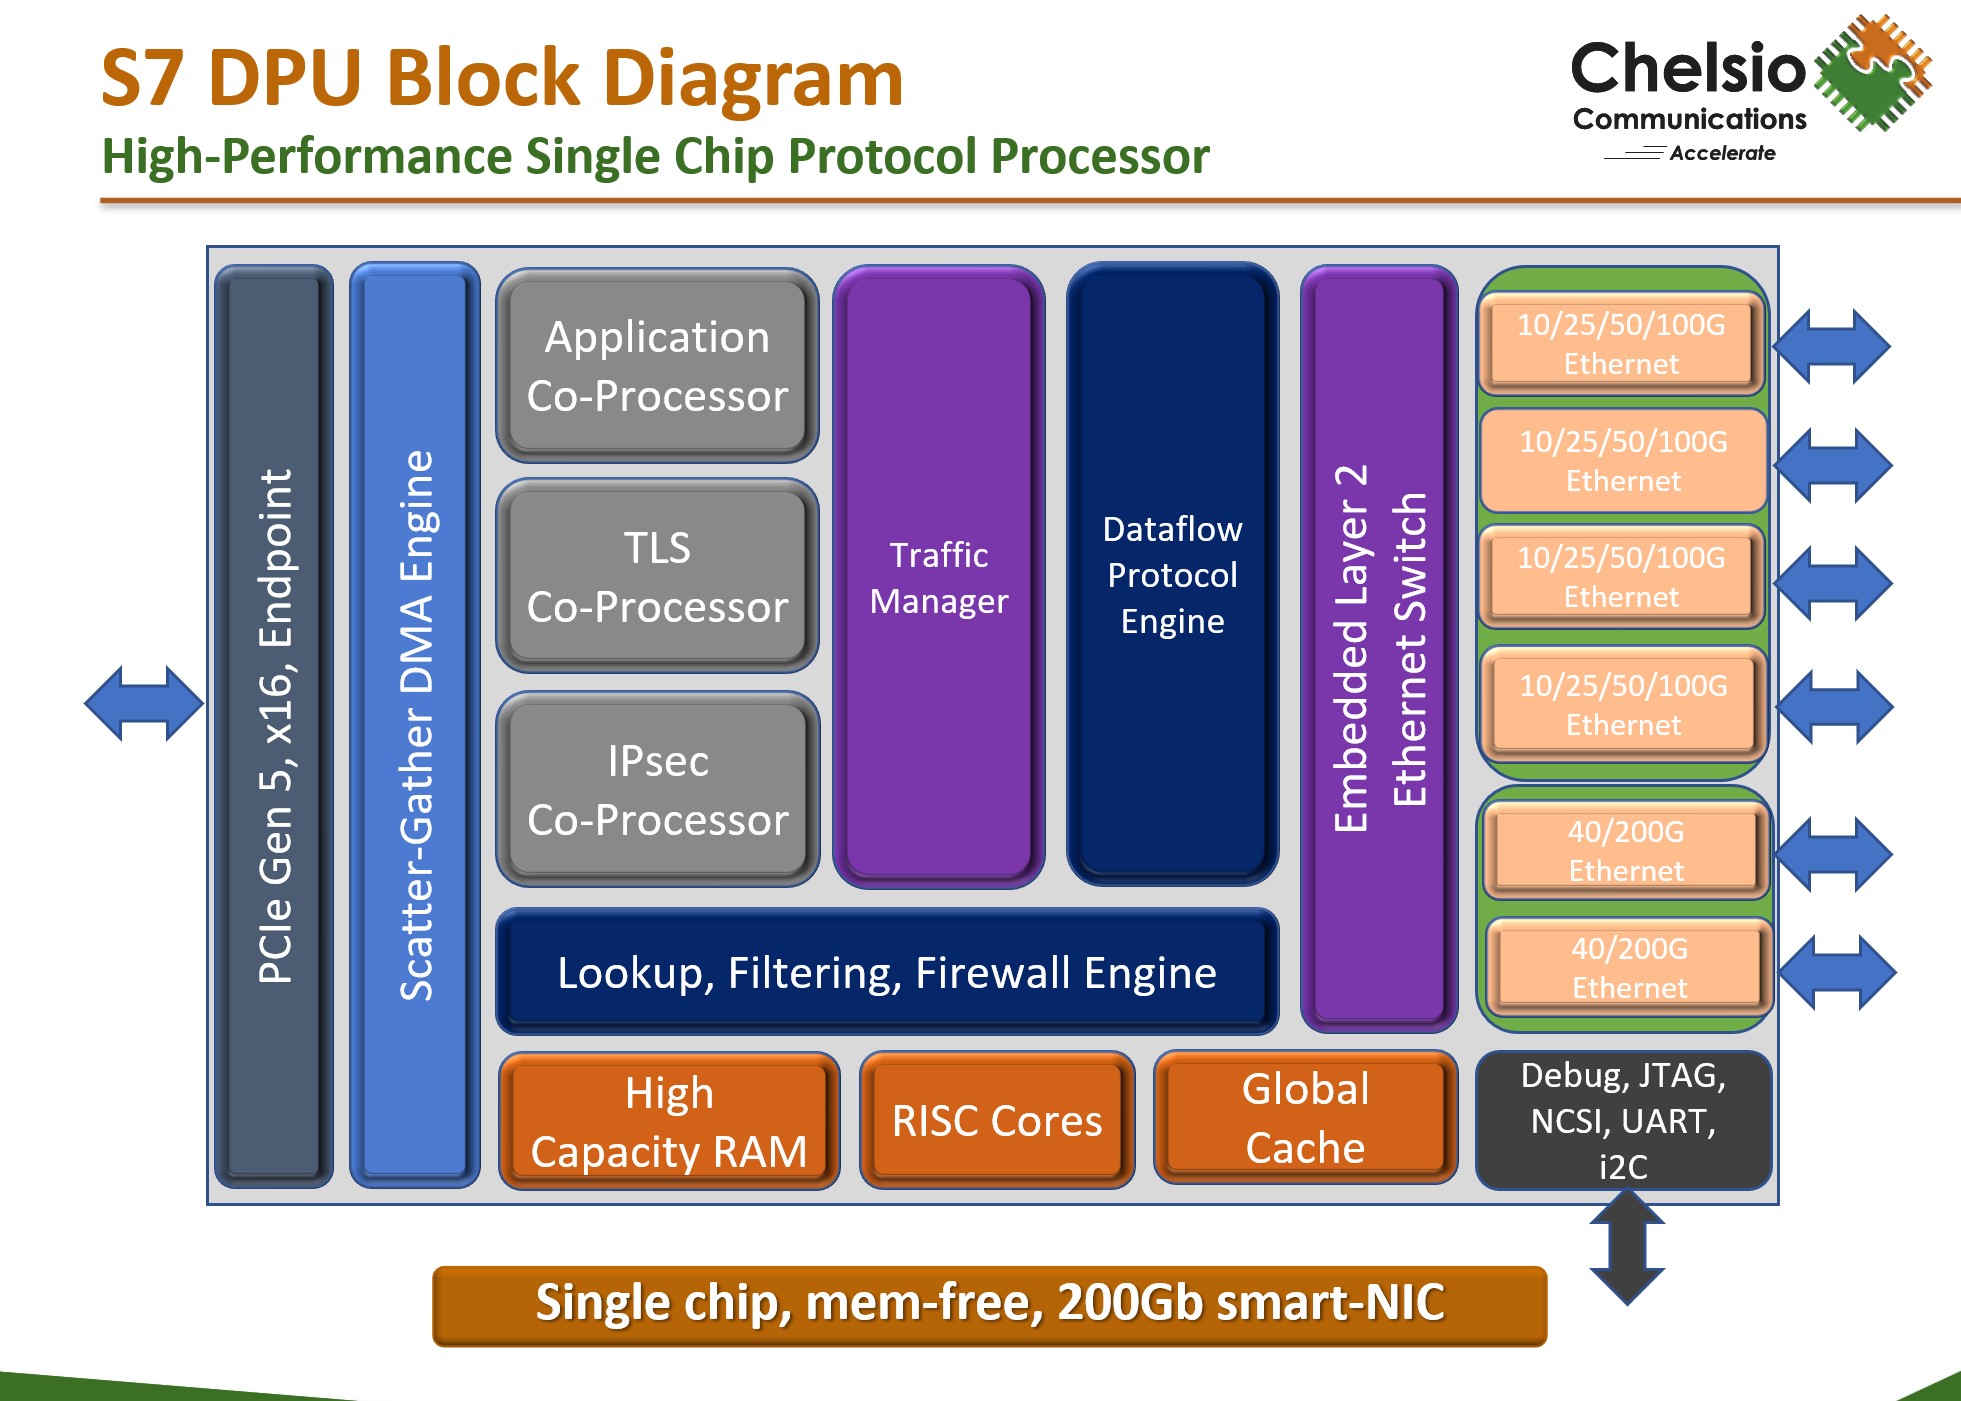 Chelsio D7 DPU Block Diagram